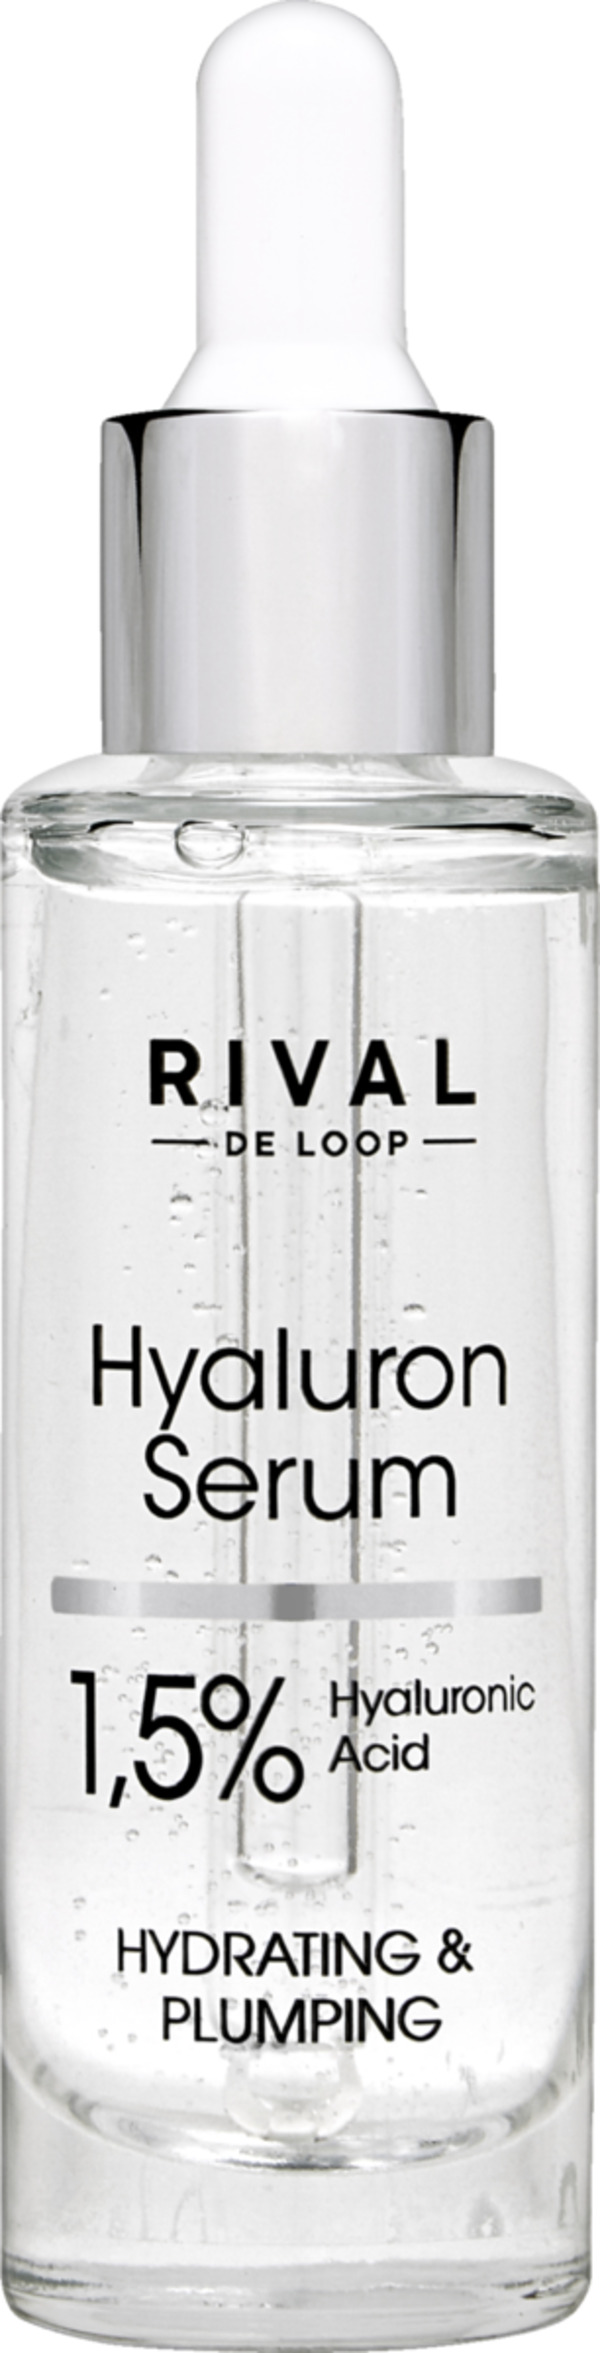 Bild 1 von RIVAL DE LOOP Hyaluron Serum